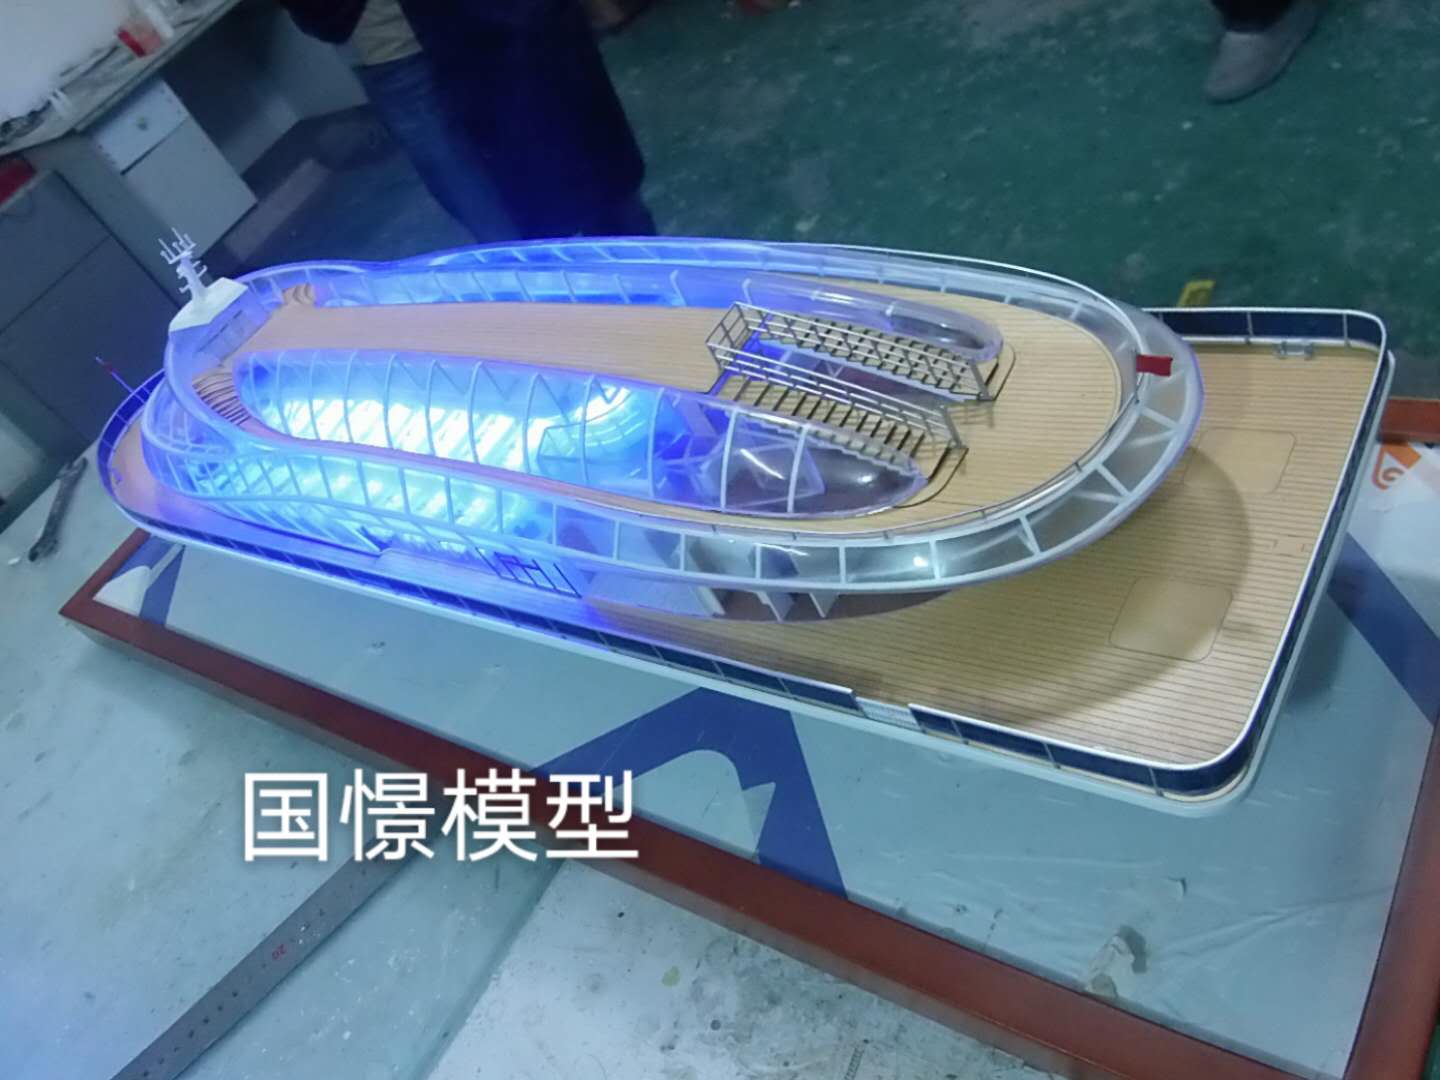 呼图壁县船舶模型